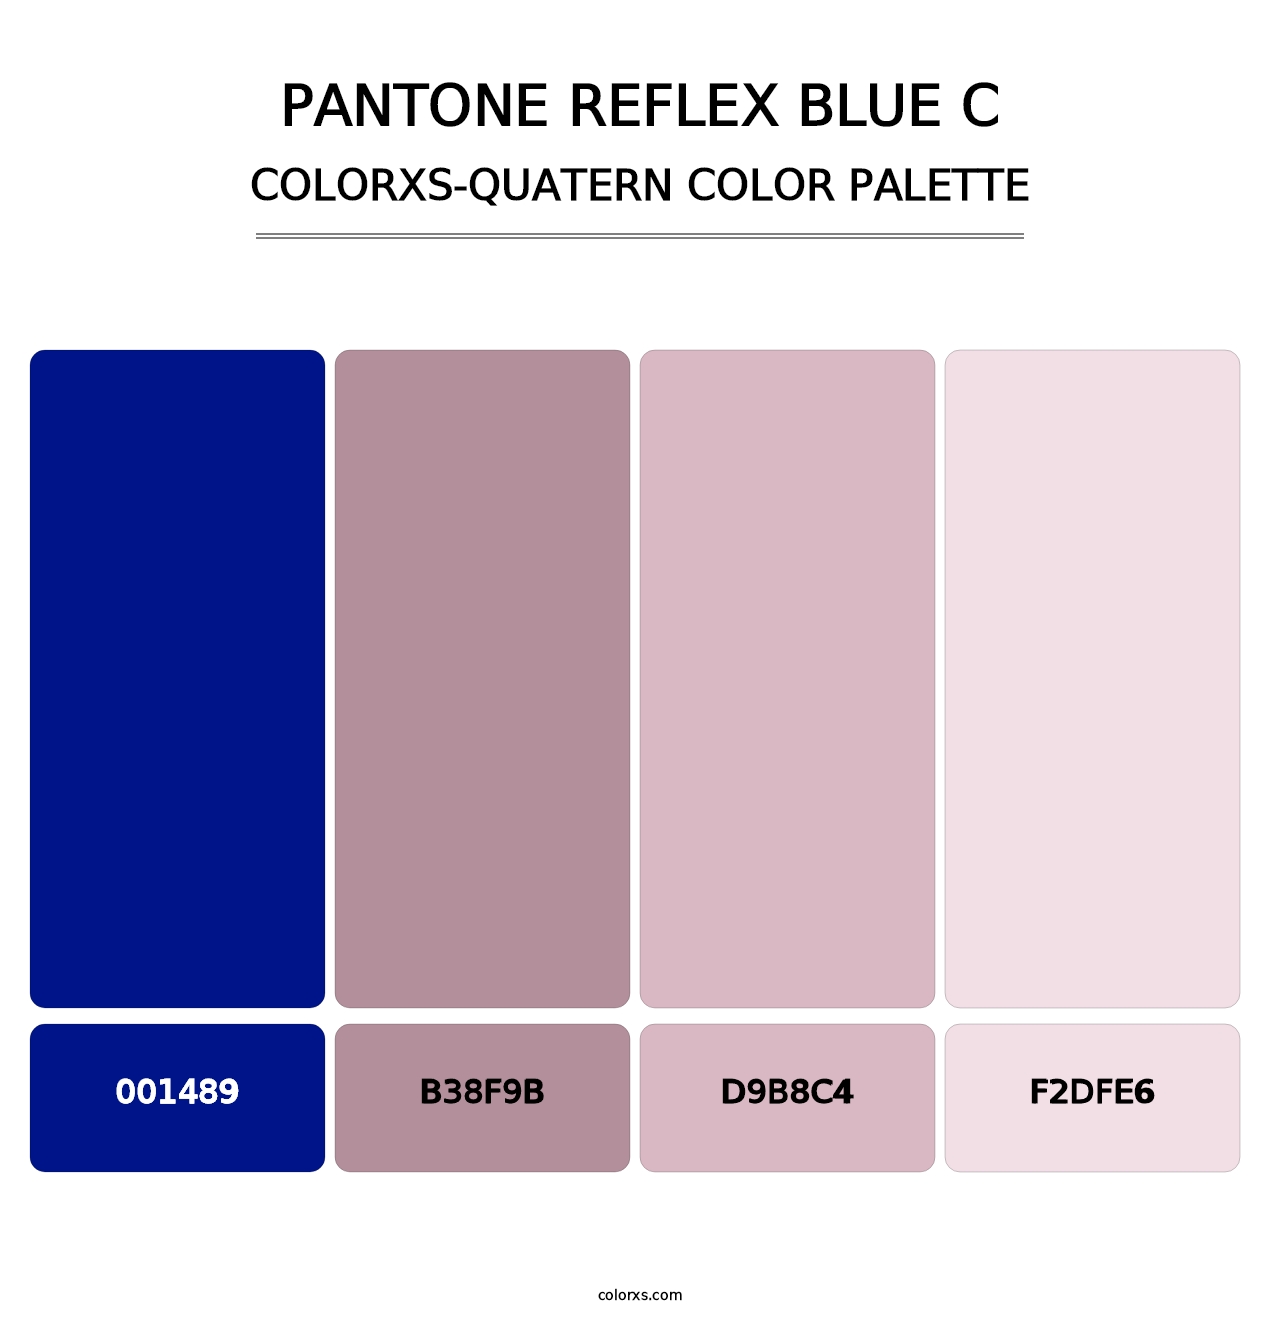 PANTONE Reflex Blue C - Colorxs Quatern Palette